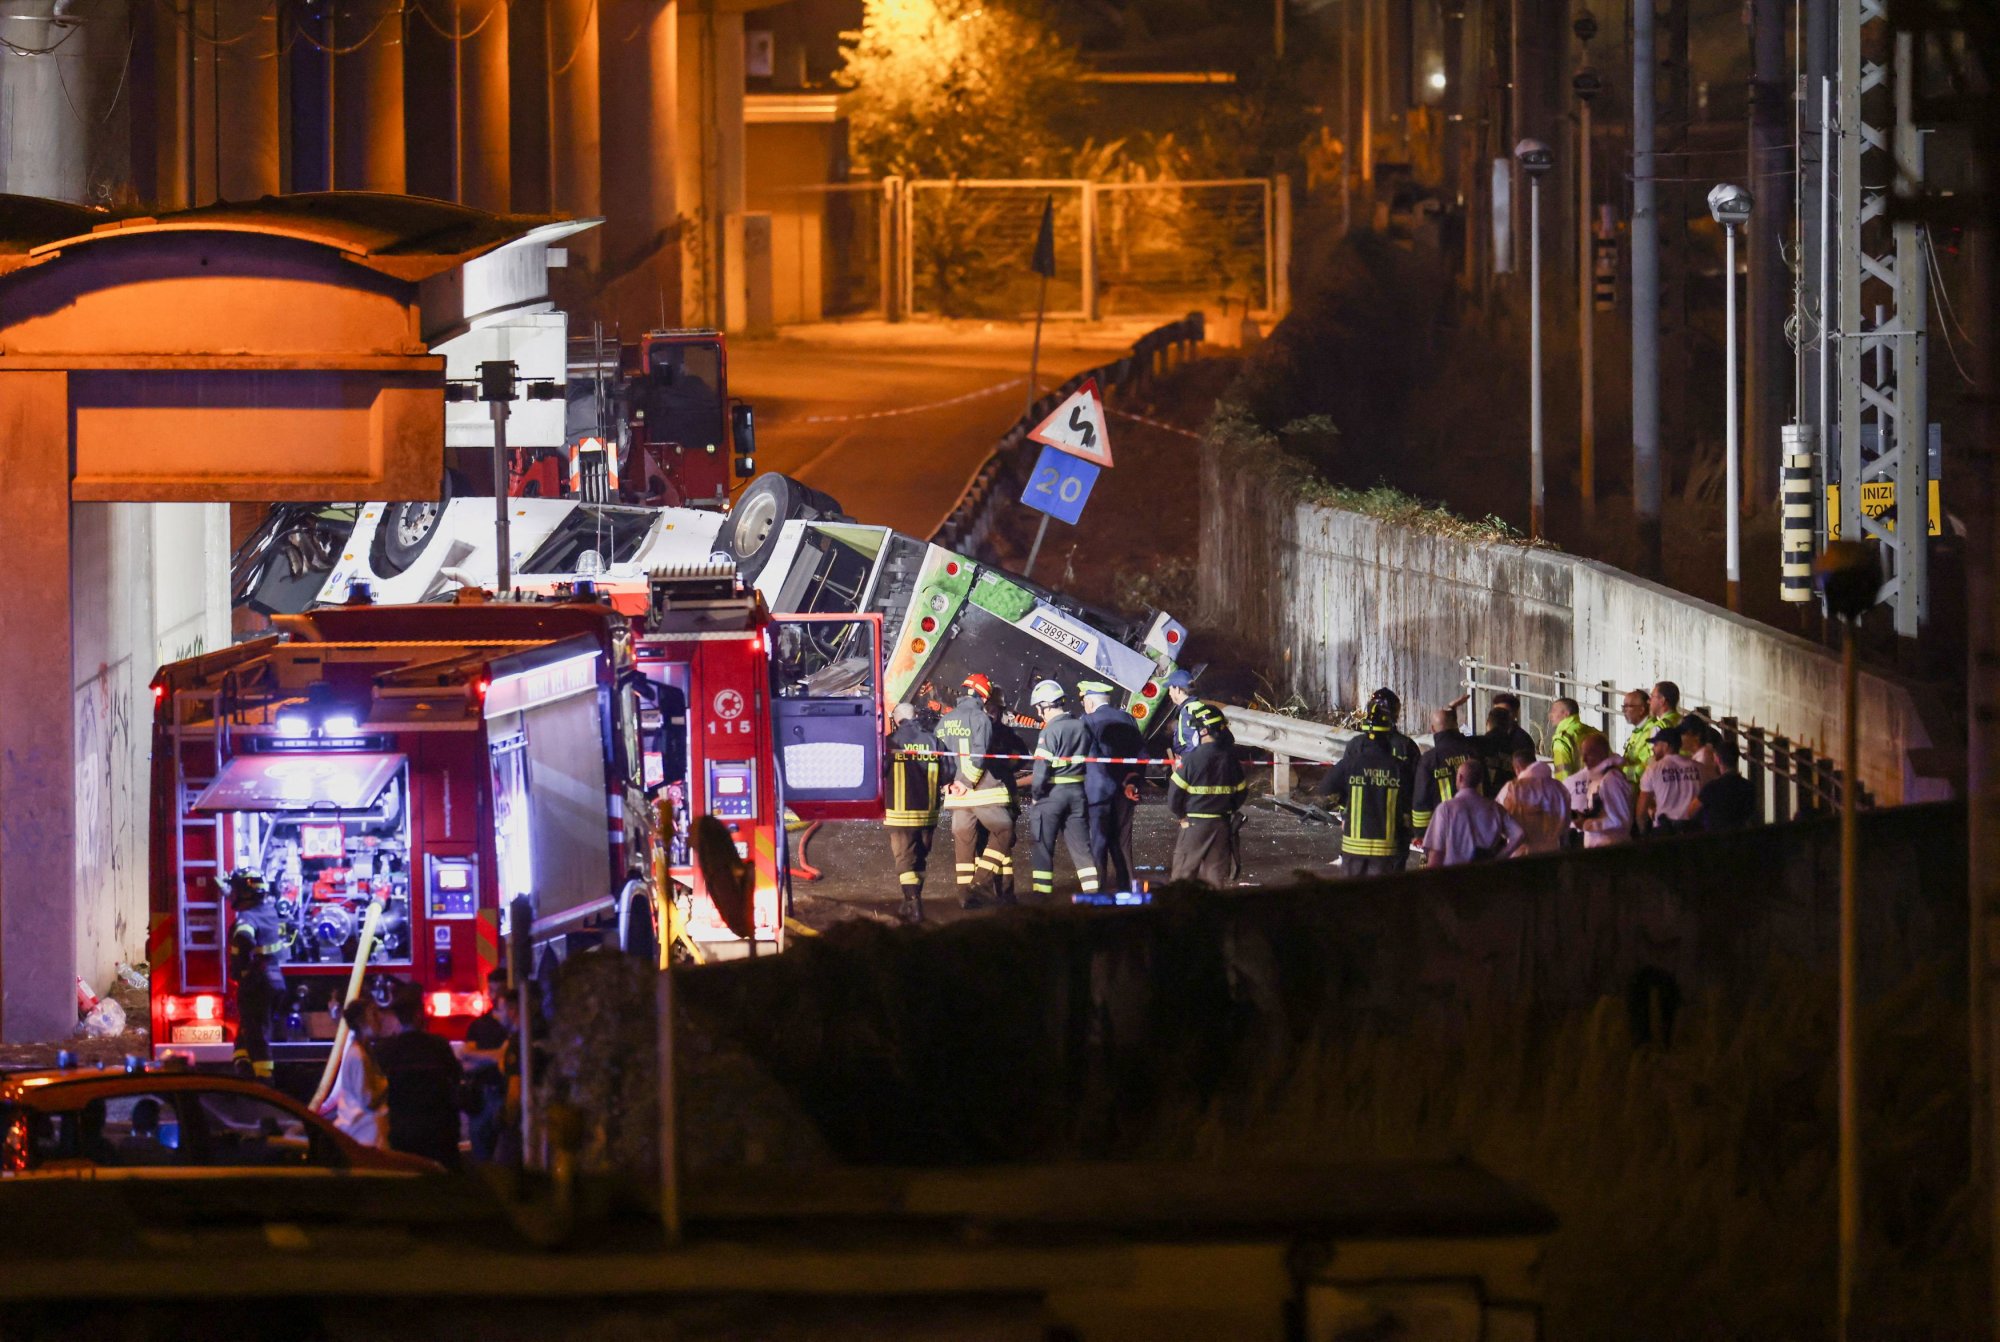 Βίντεο ντοκουμέντο από την τραγωδία στη Βενετία: Η στιγμή που το λεωφορείο πέφτει από τη γέφυρα